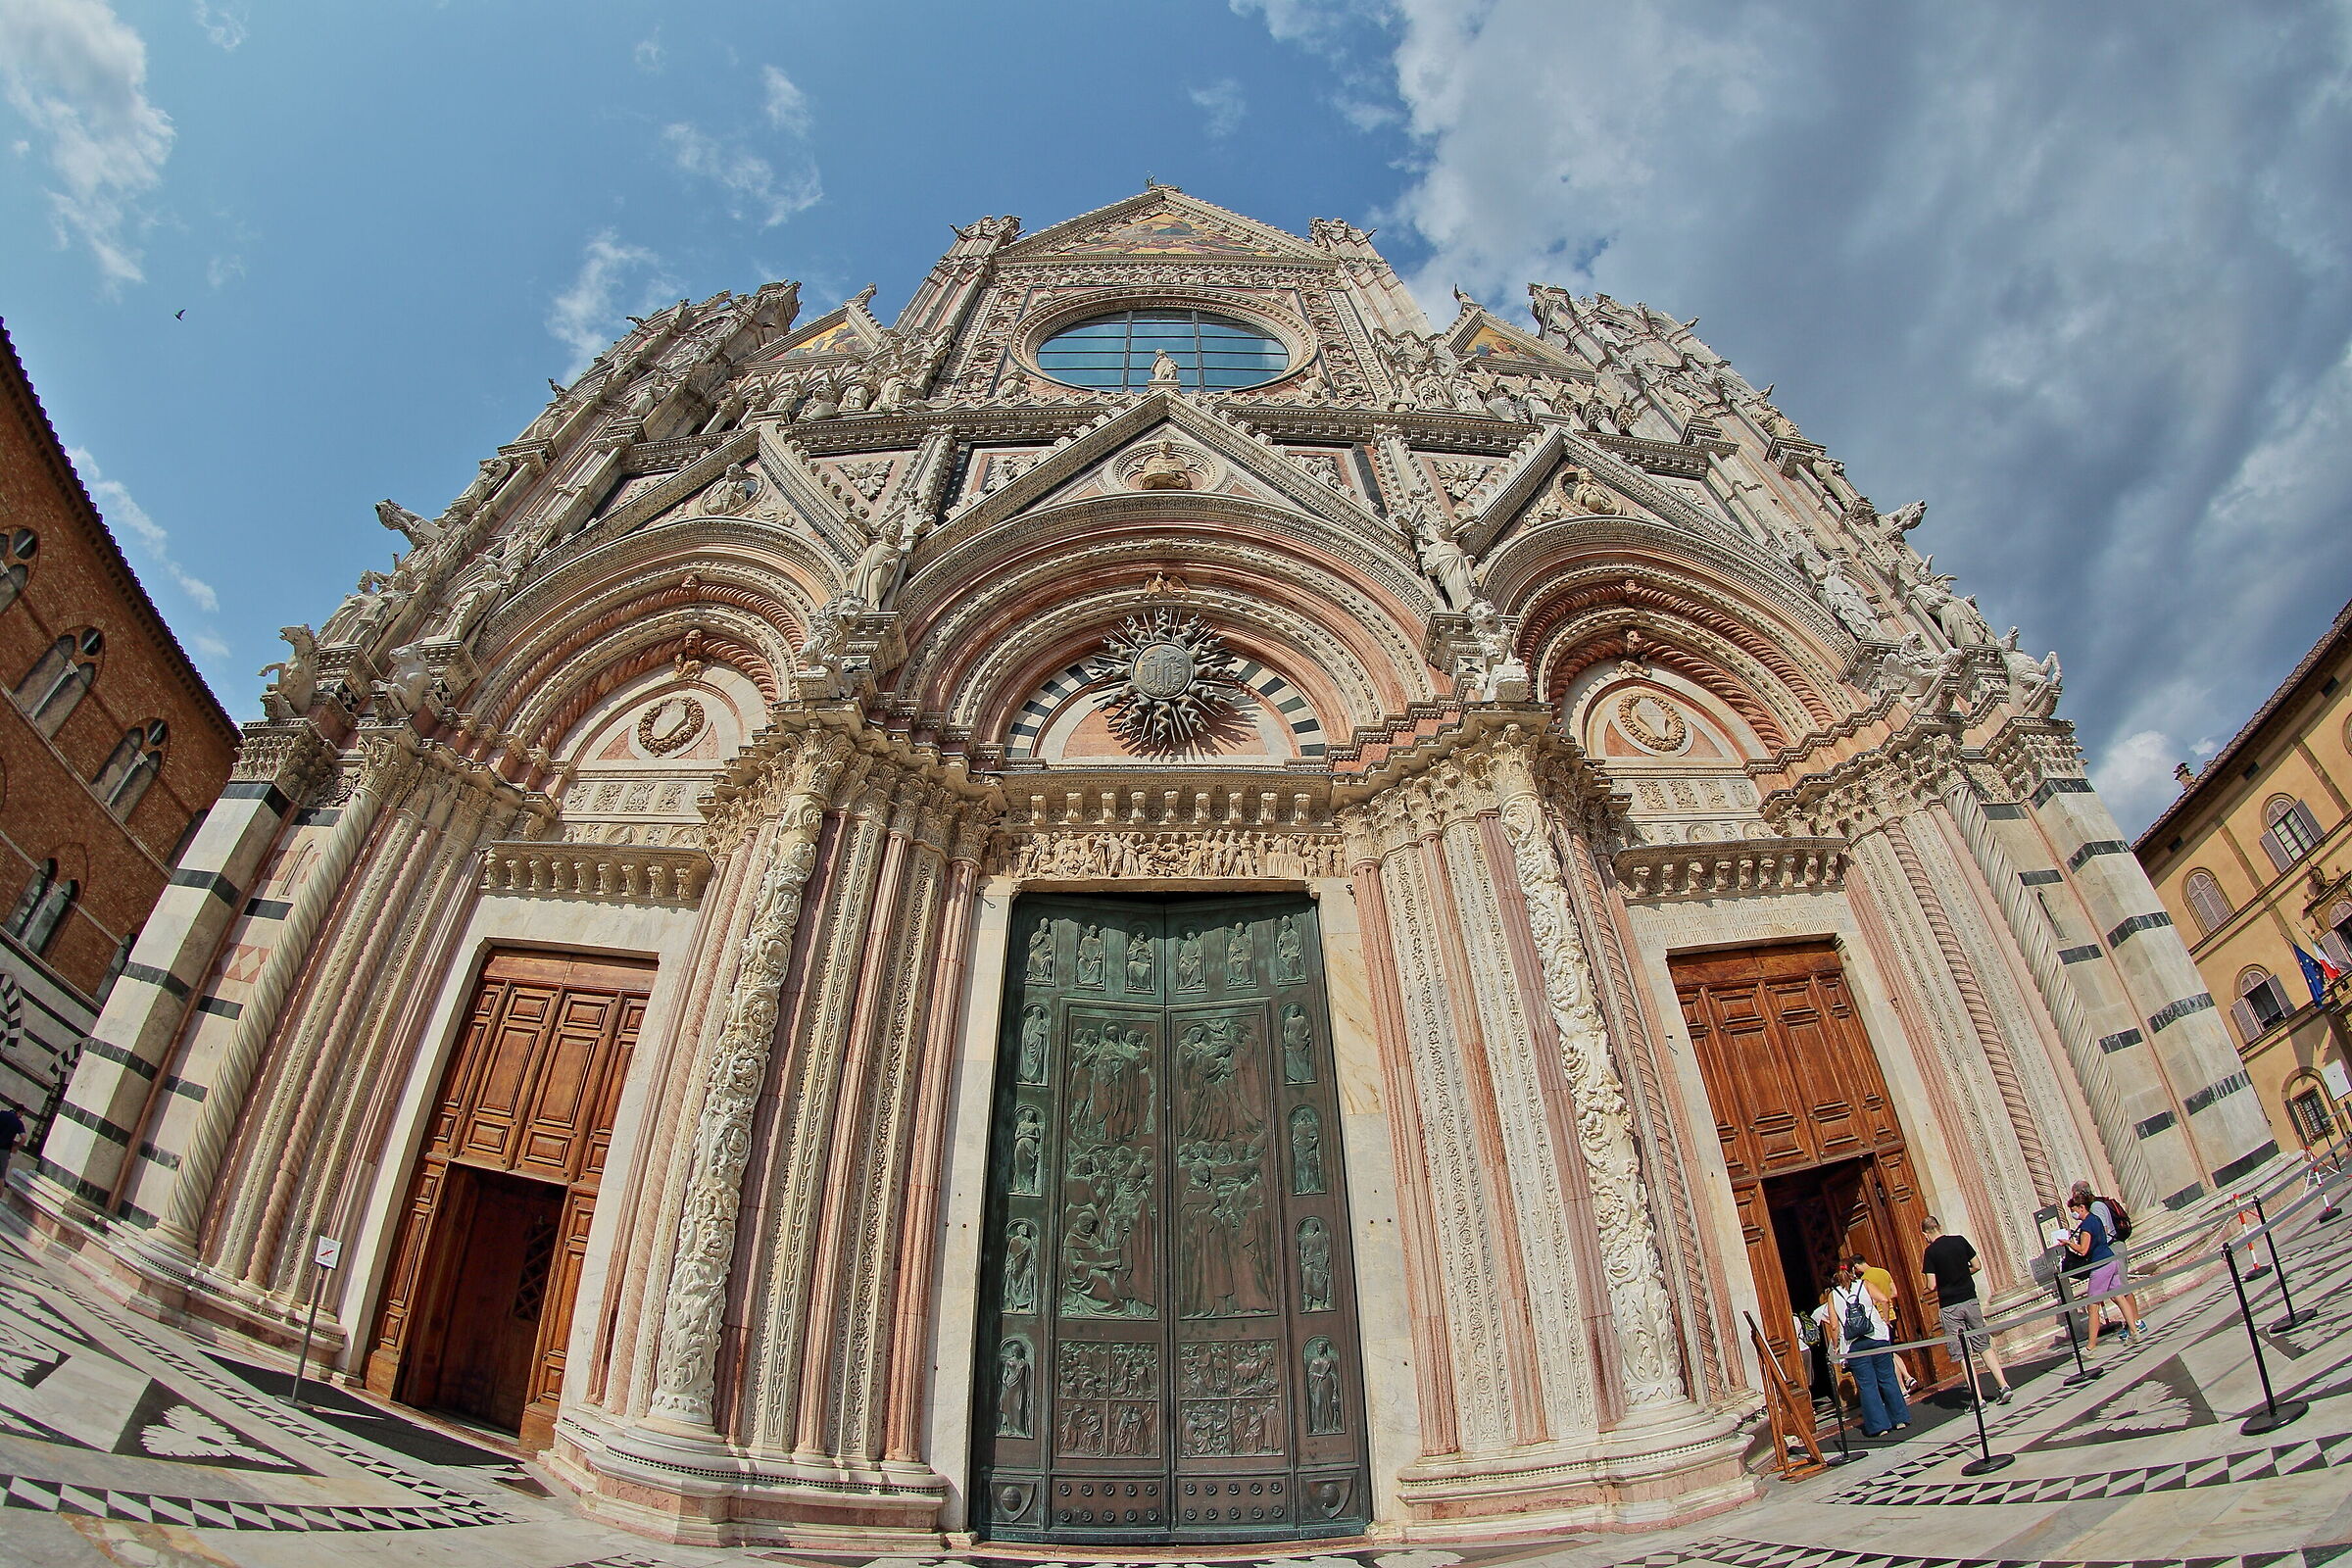 Facciata Duomo di Siena a 8mm di focale...